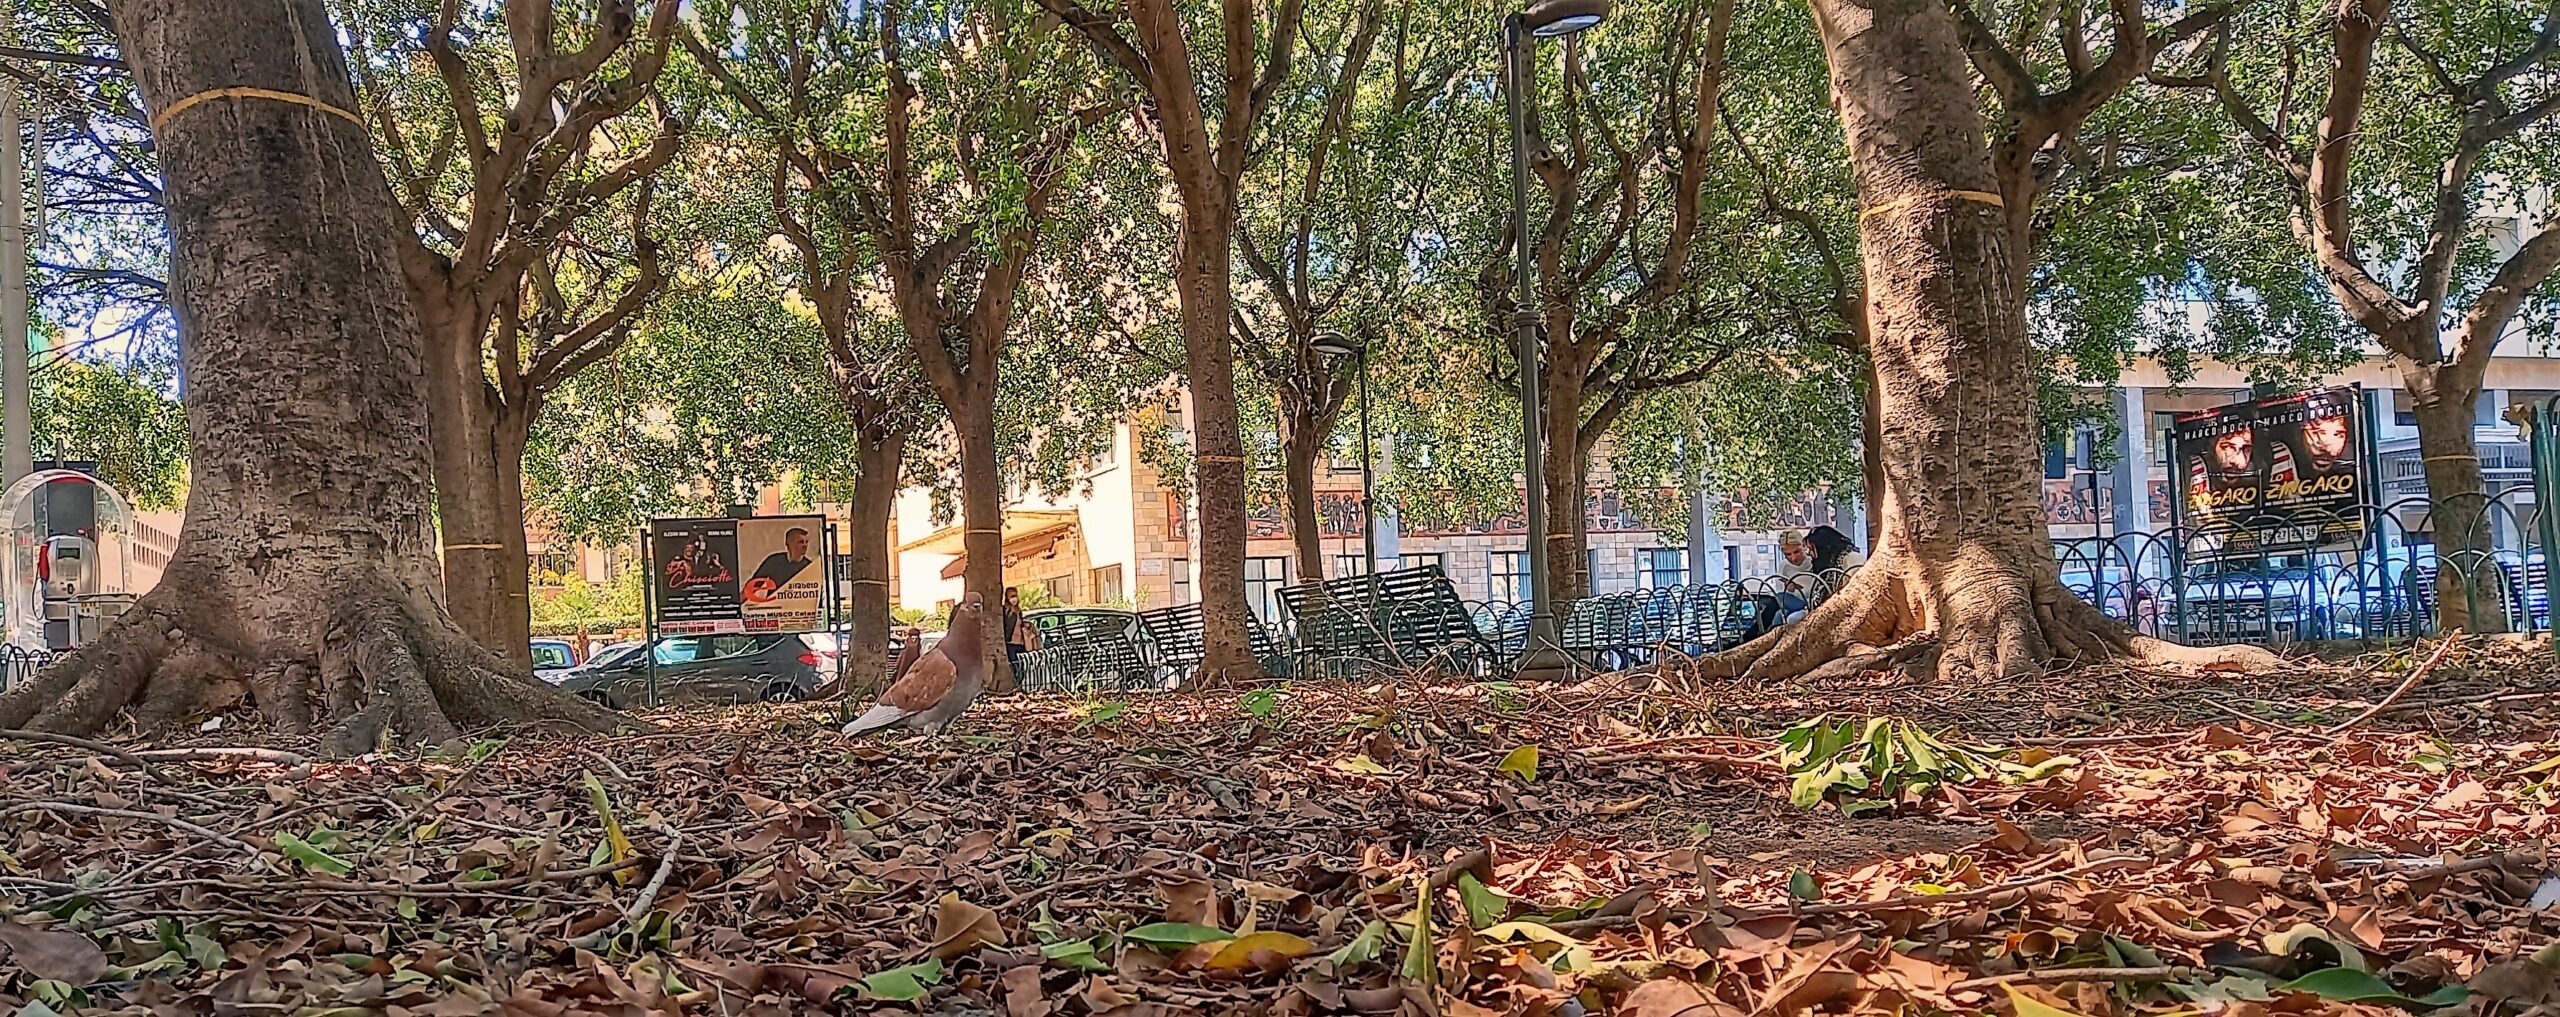 cerchi d oro 1mqdb piazza giovanni verga il parco ritrovato catania visionaria